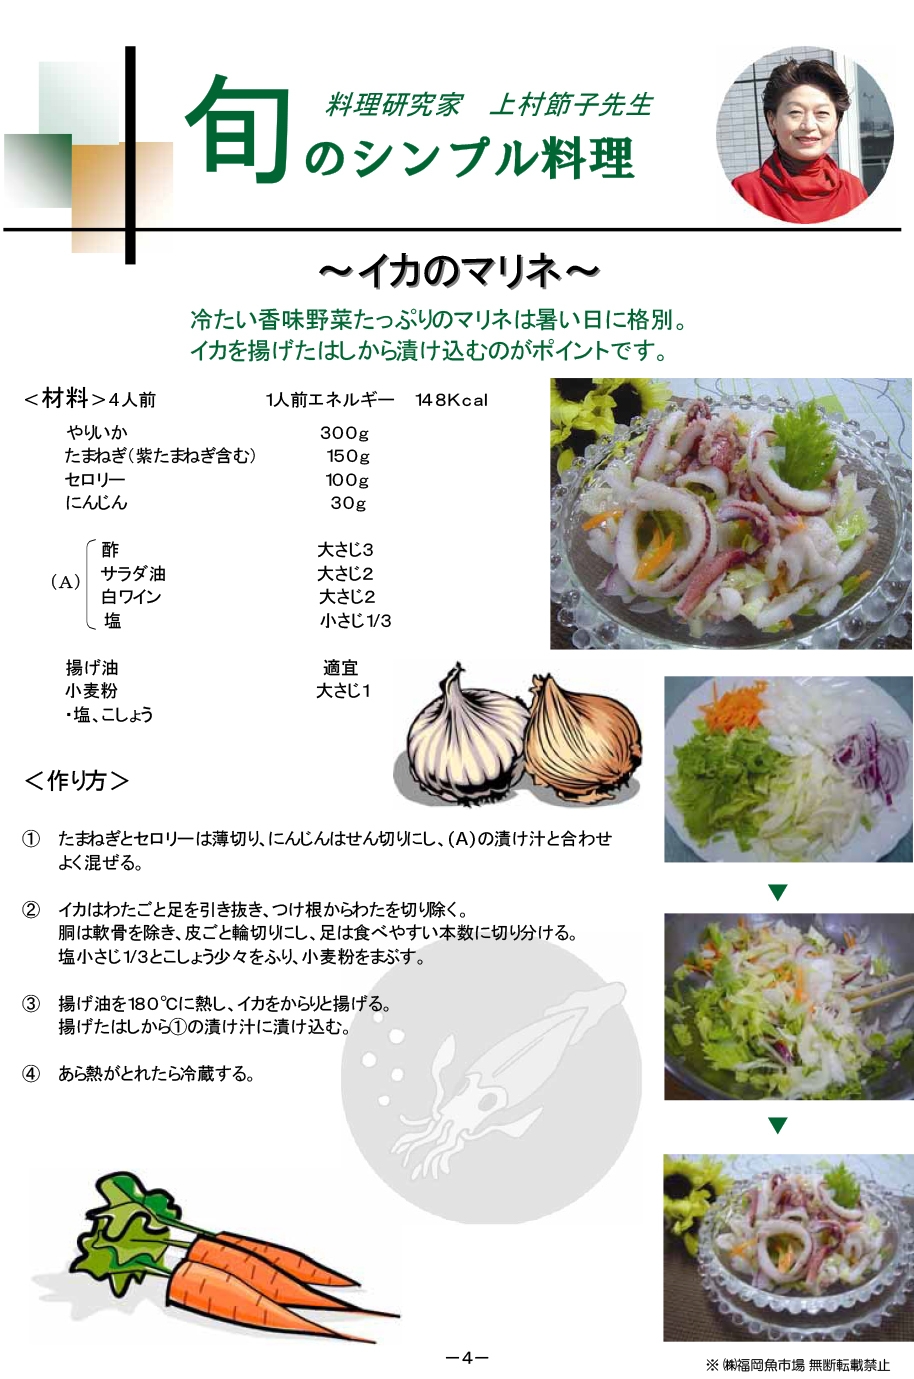 イカのマリネ 旬のレシピ 福岡魚市場